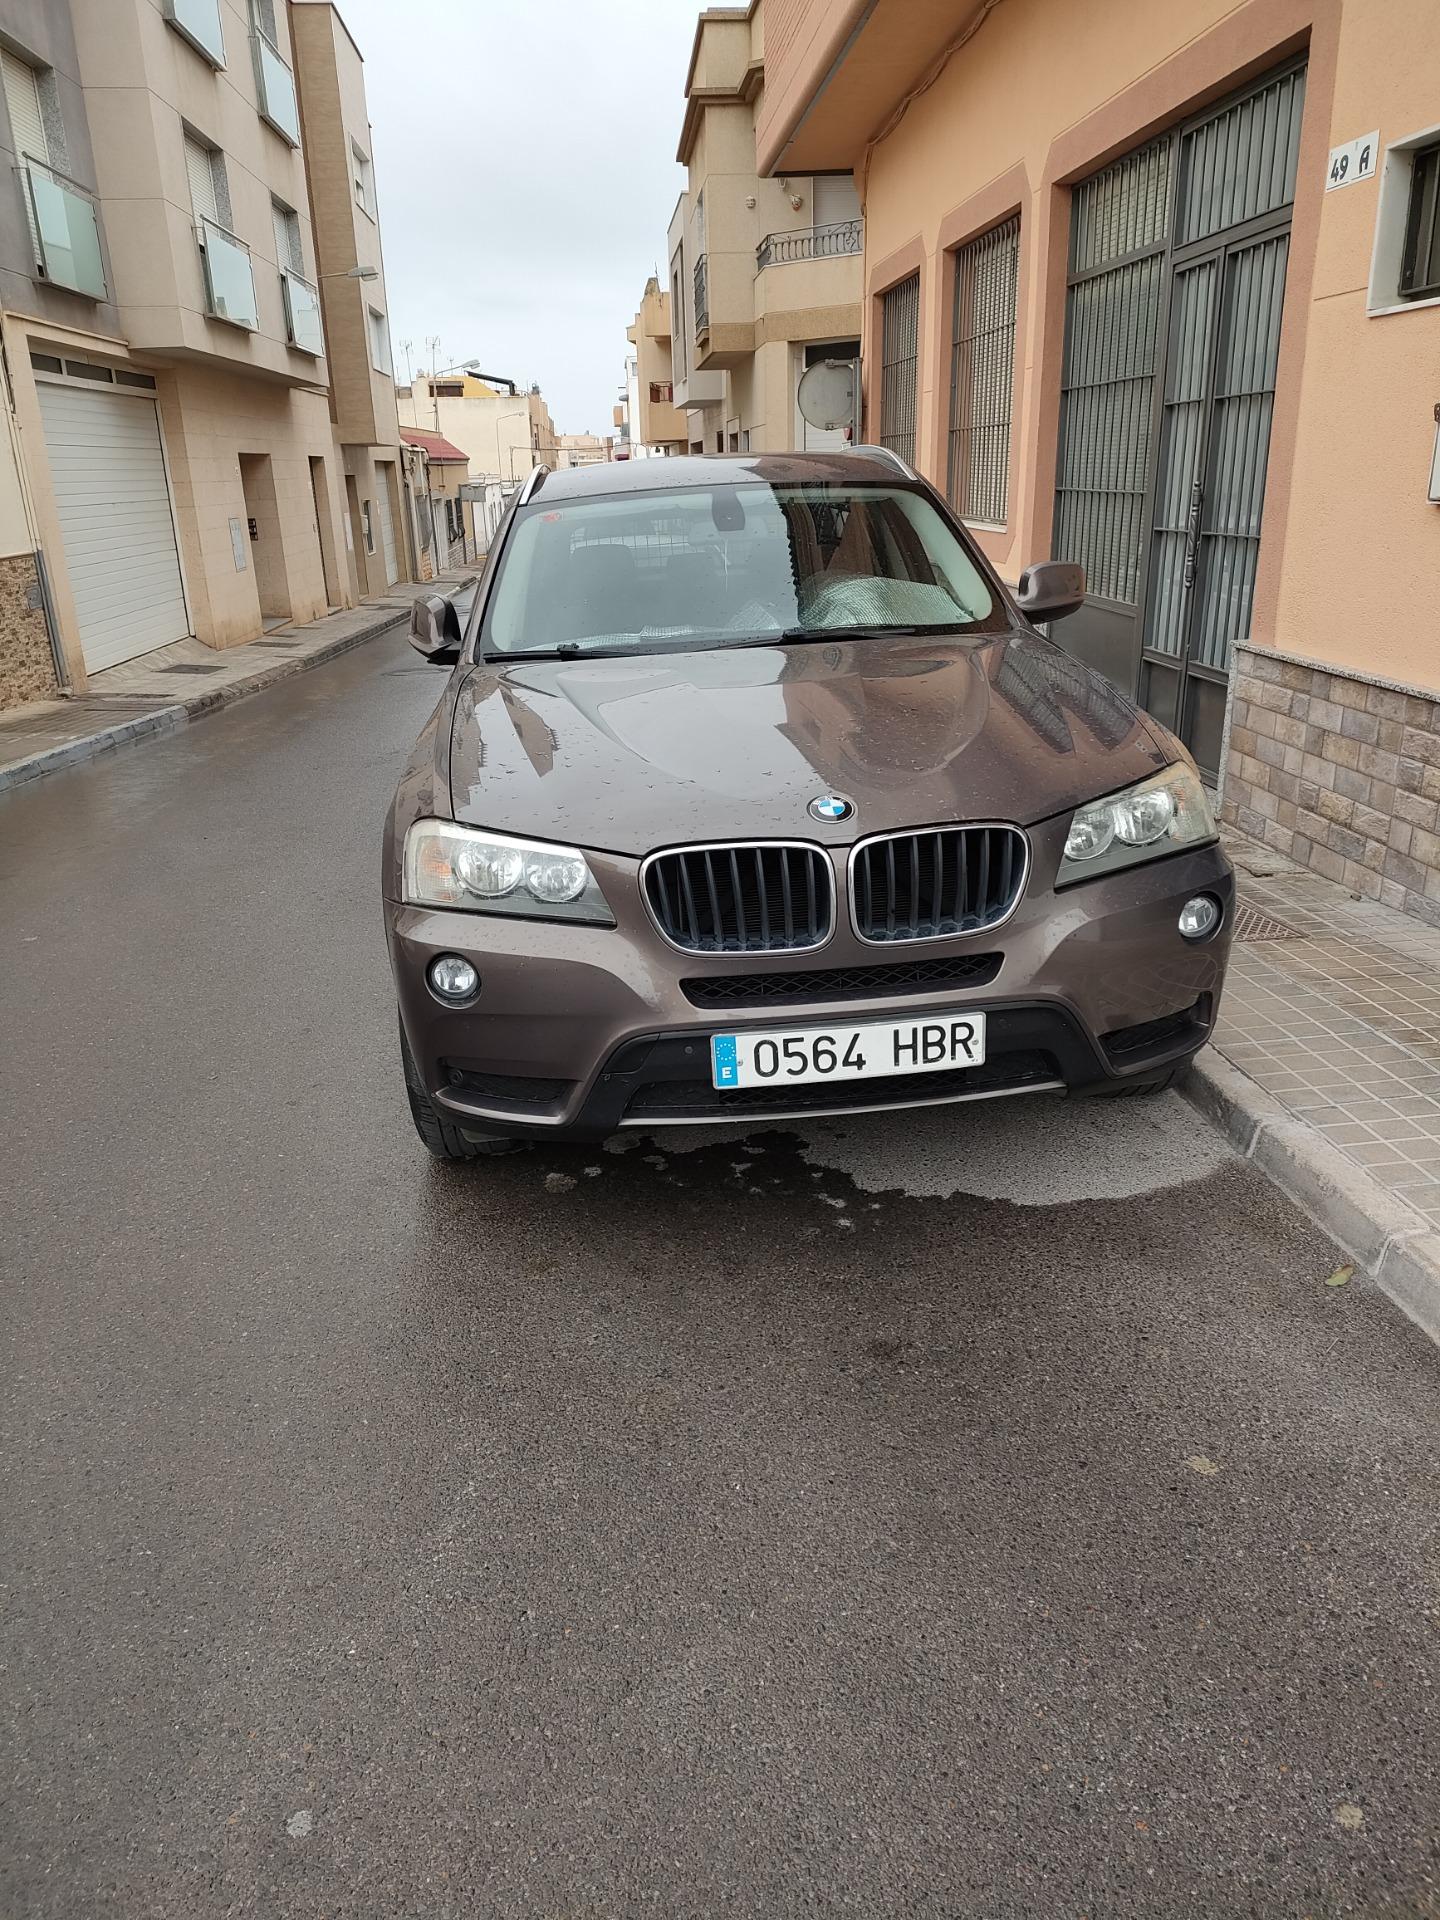 Foto 1 de BMW X3 